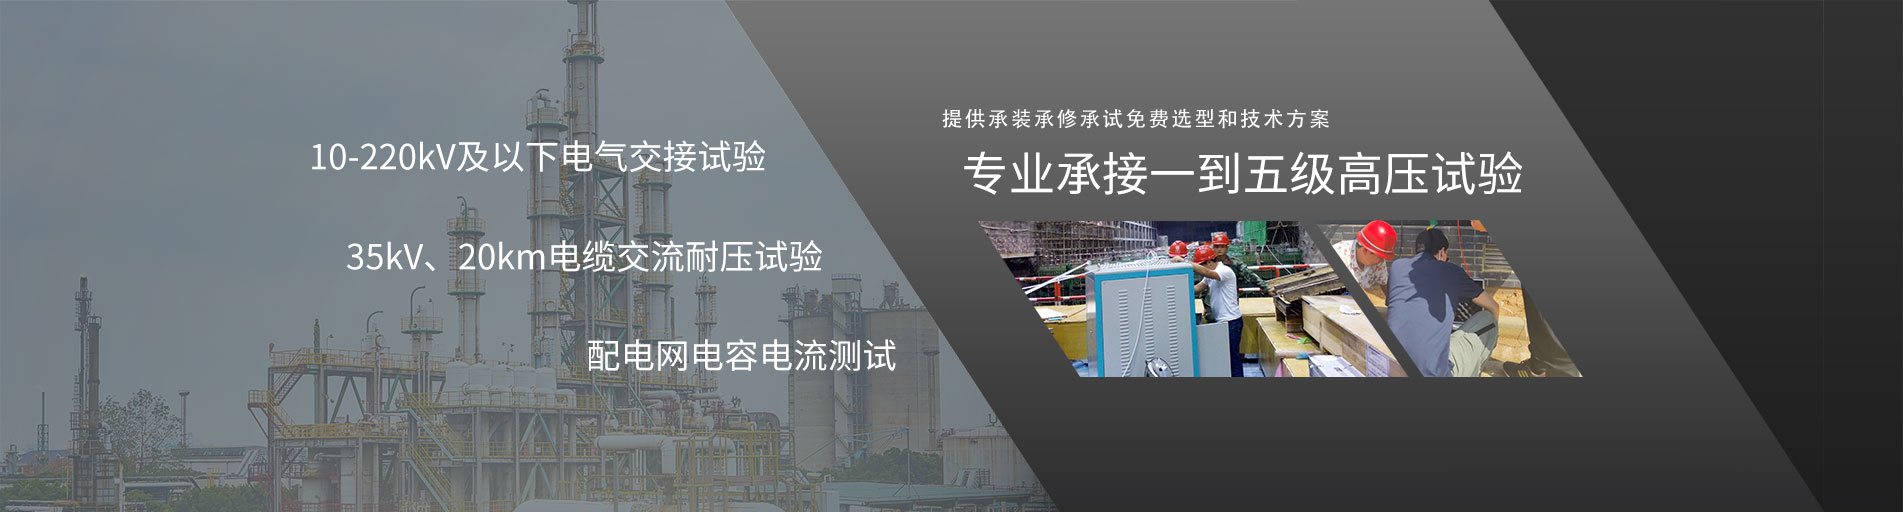 (中文) DL_T 474.1-2018 现场绝缘试验实施导则 绝缘电阻、吸收比和极化指数试验